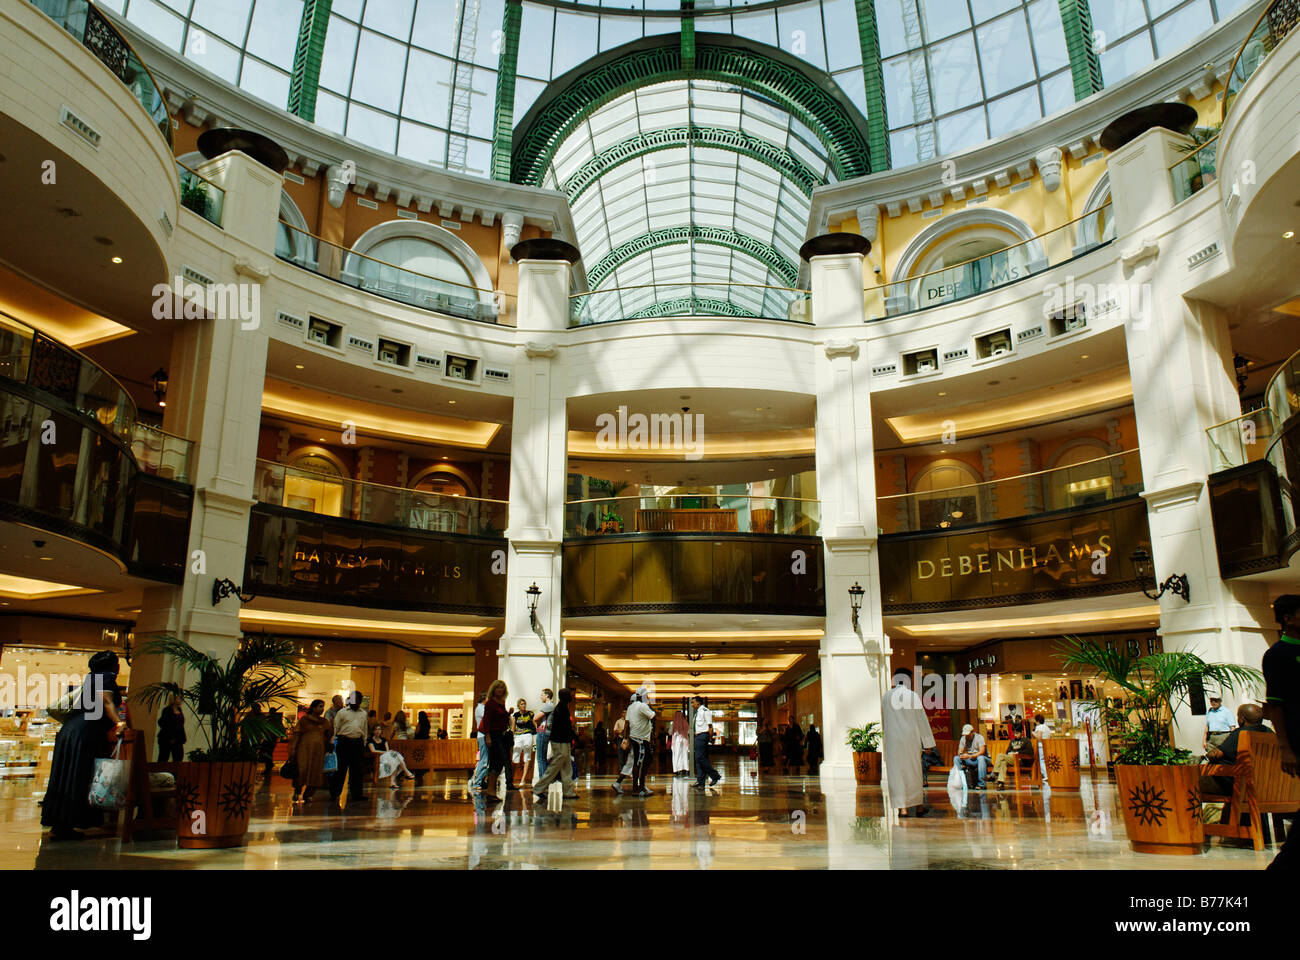 Shopping mall of Dubai, Emirate of Dubai, United Arab Emirates, Arabia, Near East Stock Photo